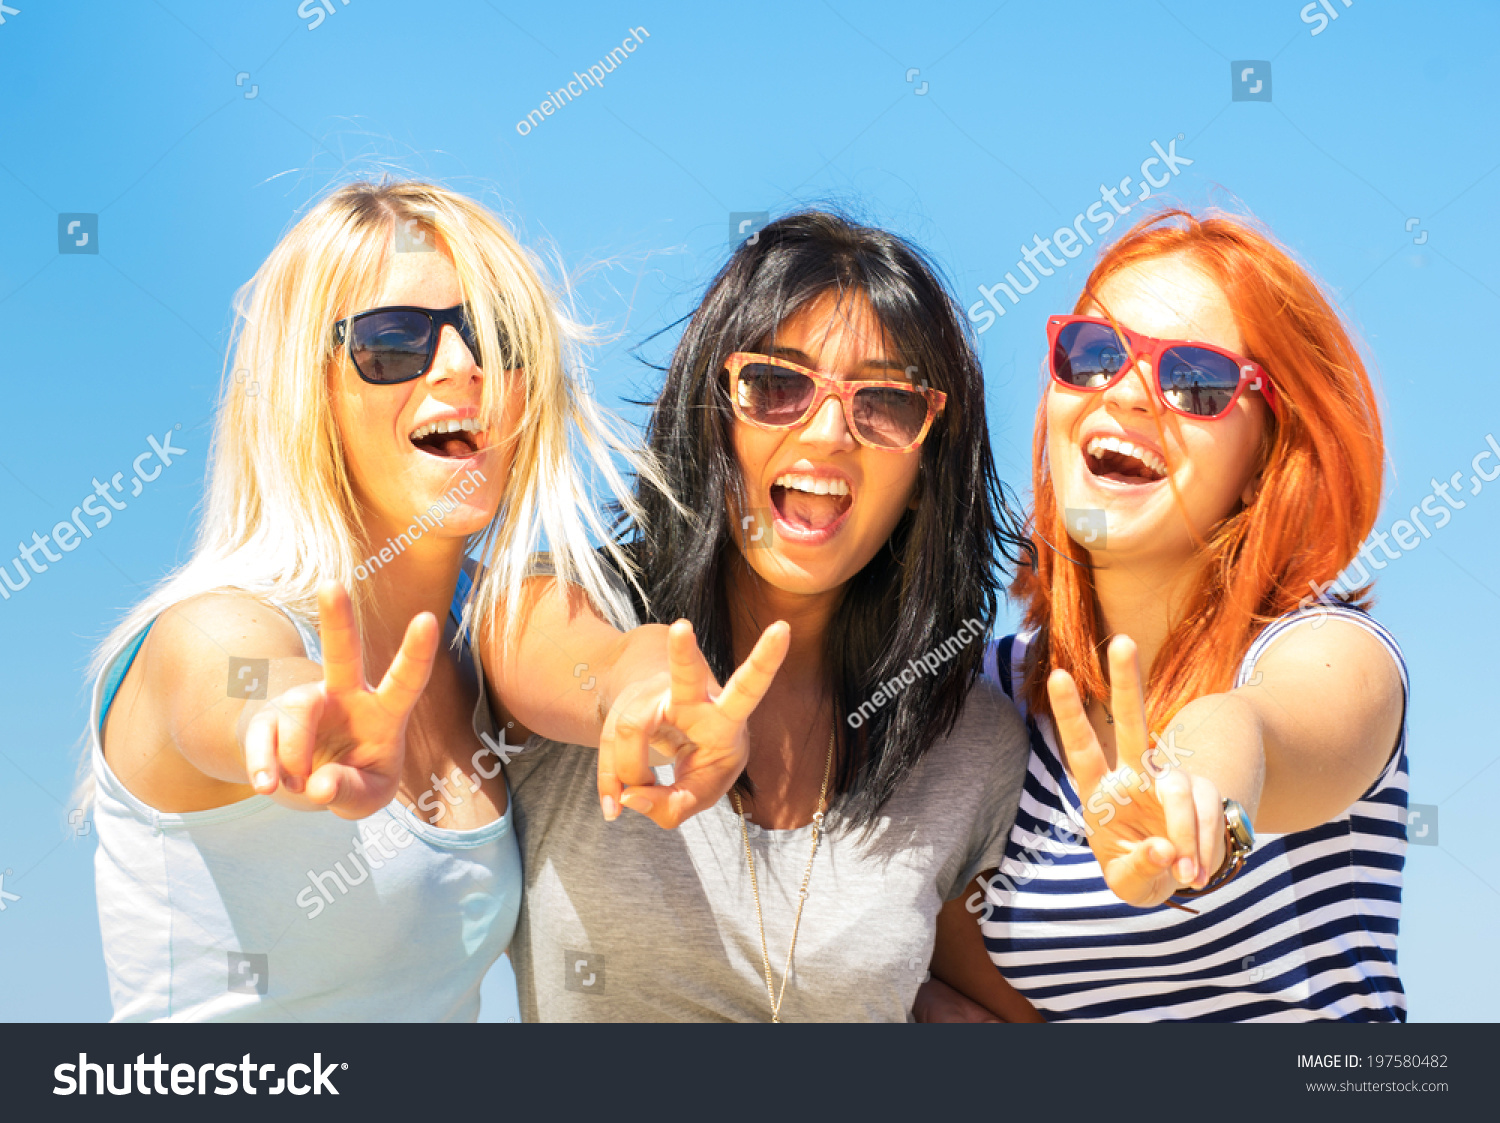 三个女朋友显示v手势语-人物-海洛创意(HelloR